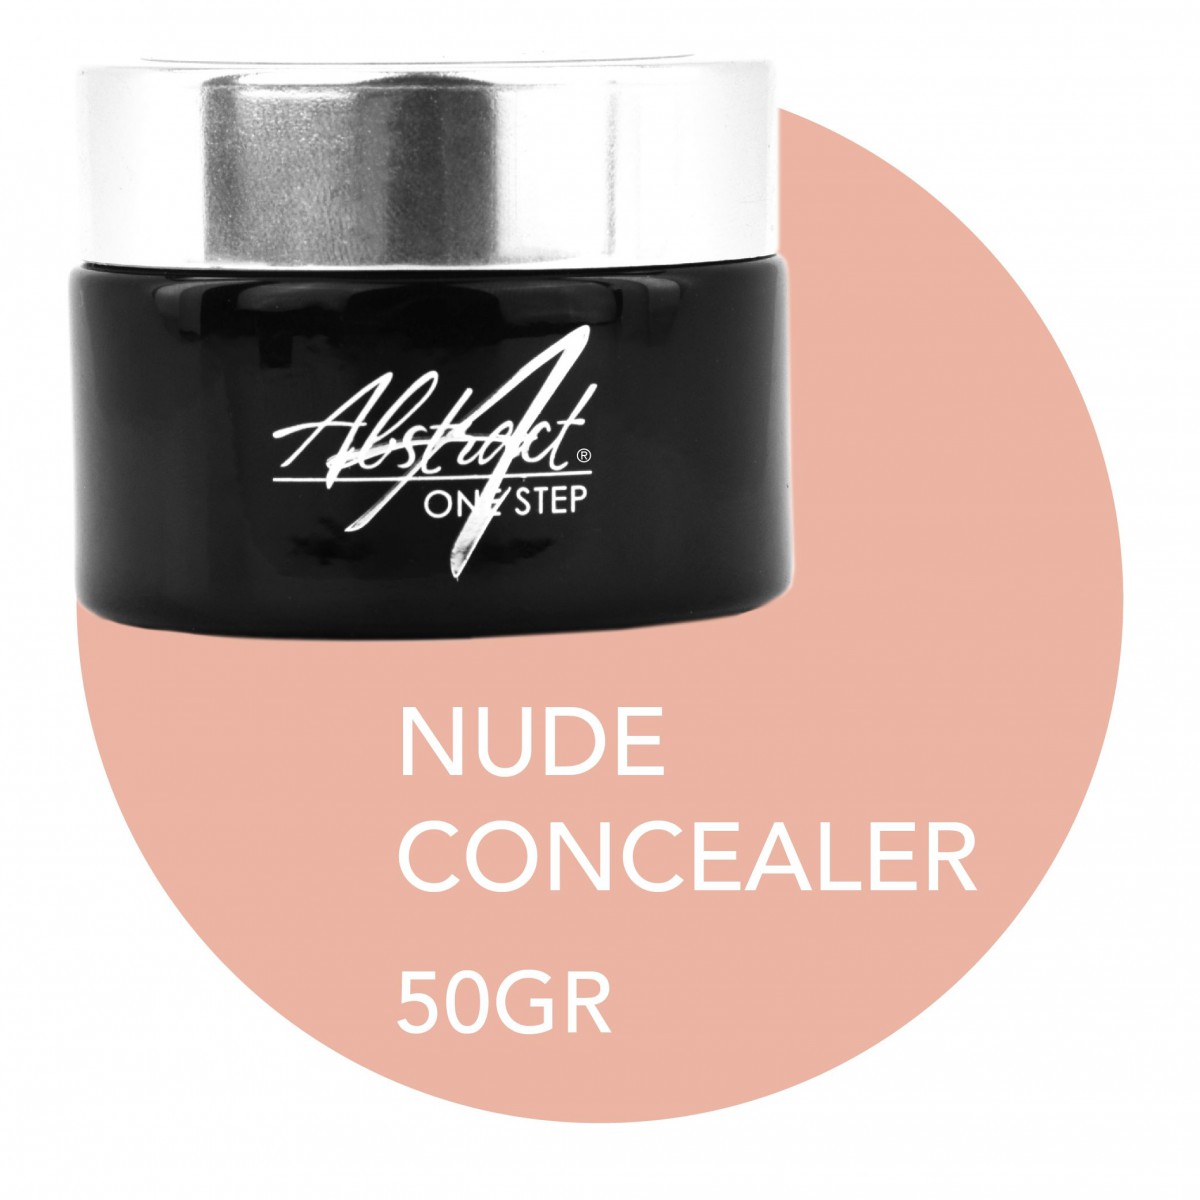 Nude Concealer - One Step Plus Gel 50g